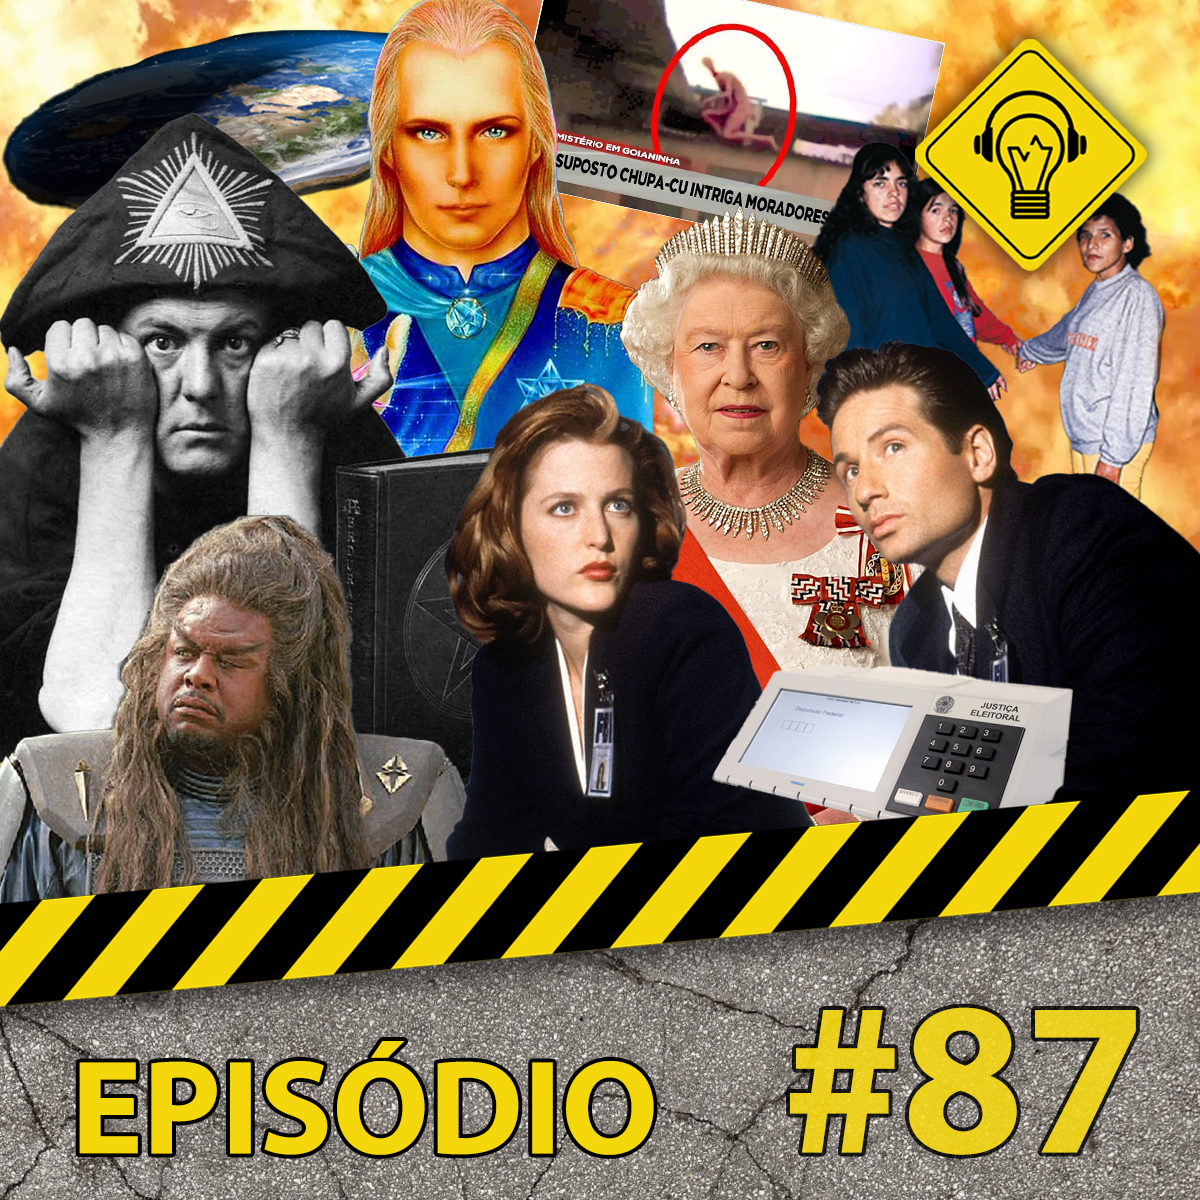 Podcast Ideia Errada #87 Teorias da Conspiração